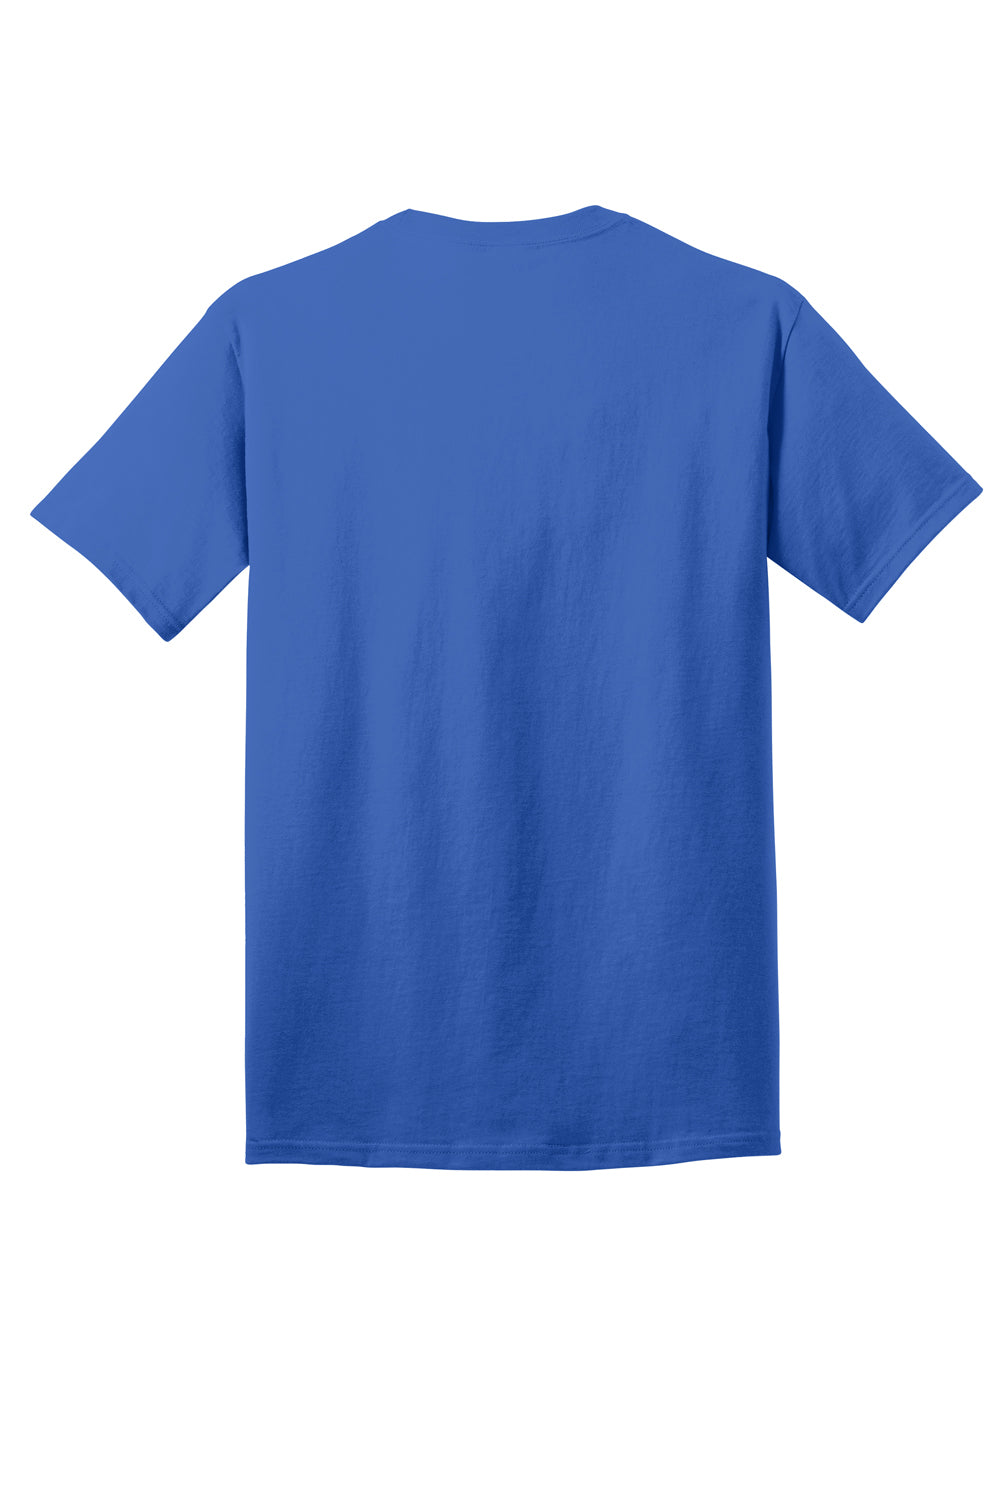 Port & Company PC54DTG Core Cotton DTG Short Sleeve Crewneck T-Shirt Royal Blue Flat Back